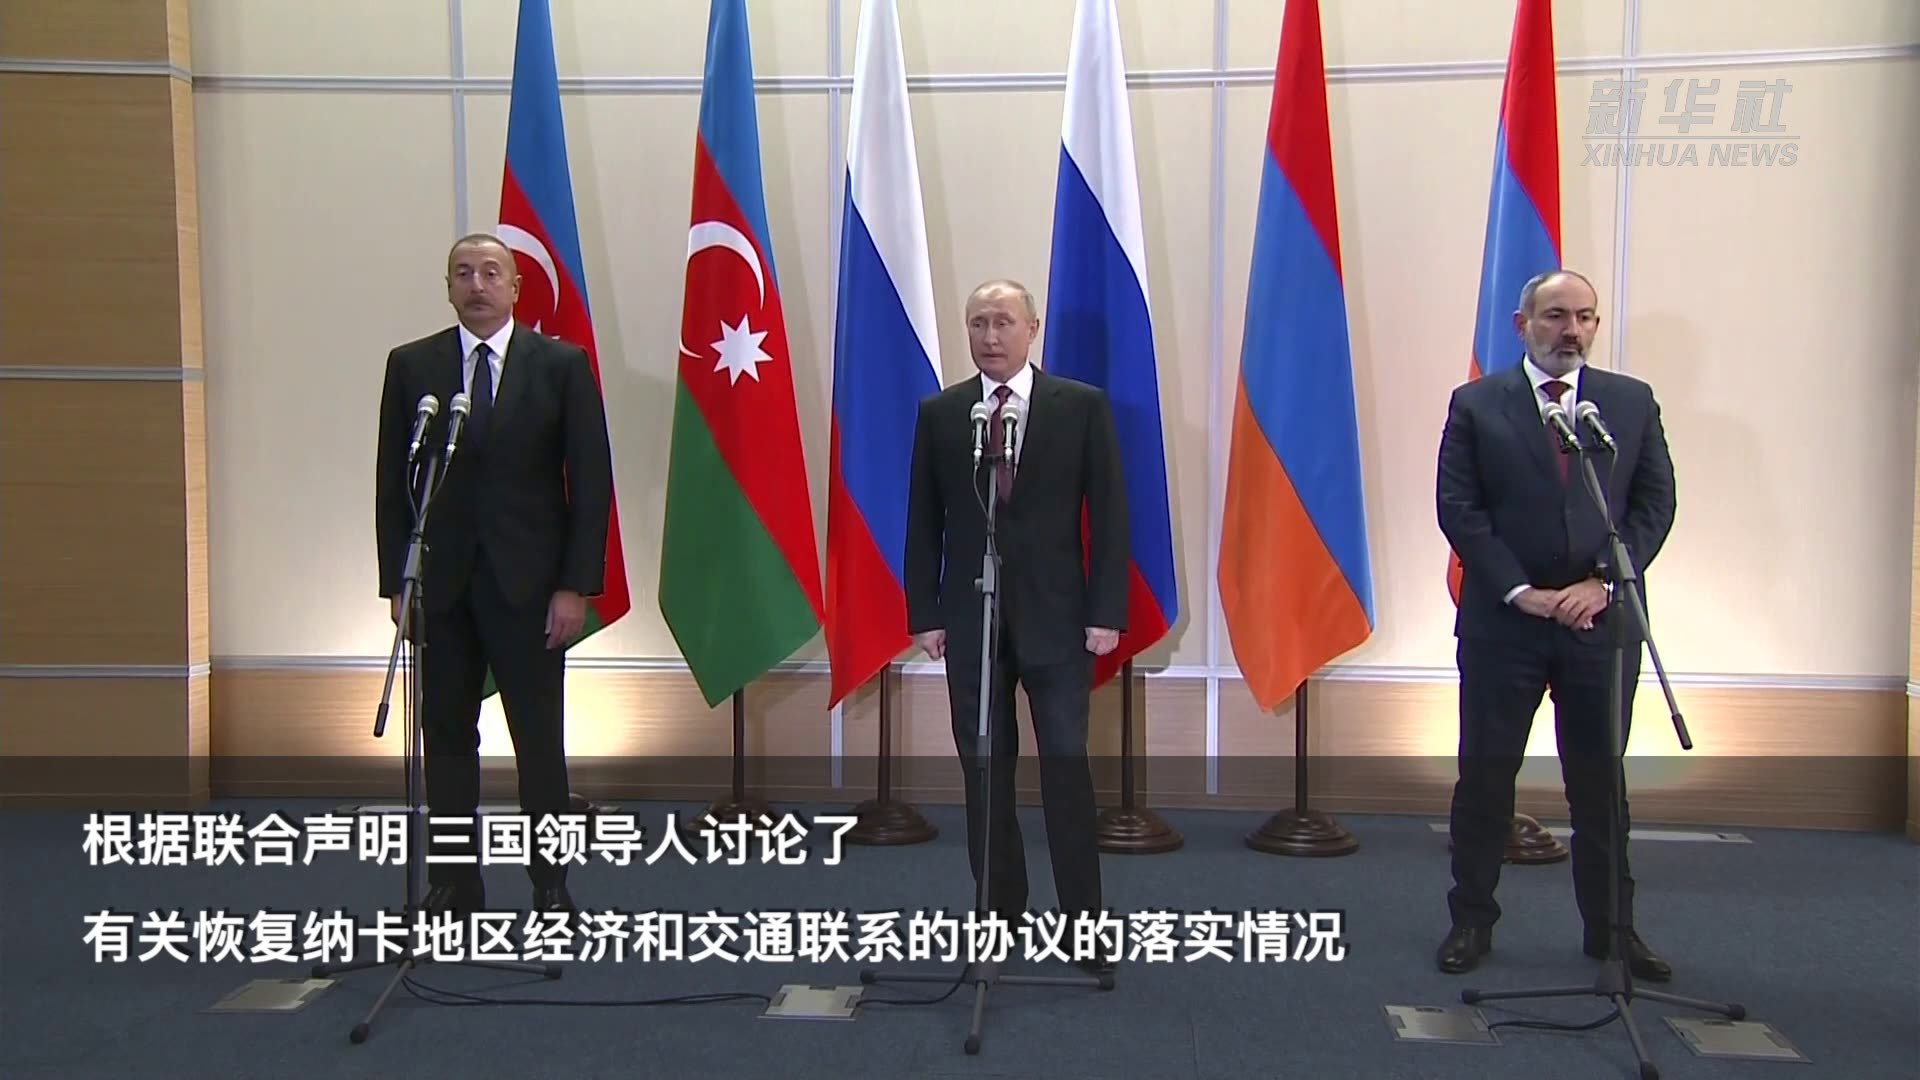 俄阿亚三国领导人就纳卡问题举行三方会谈